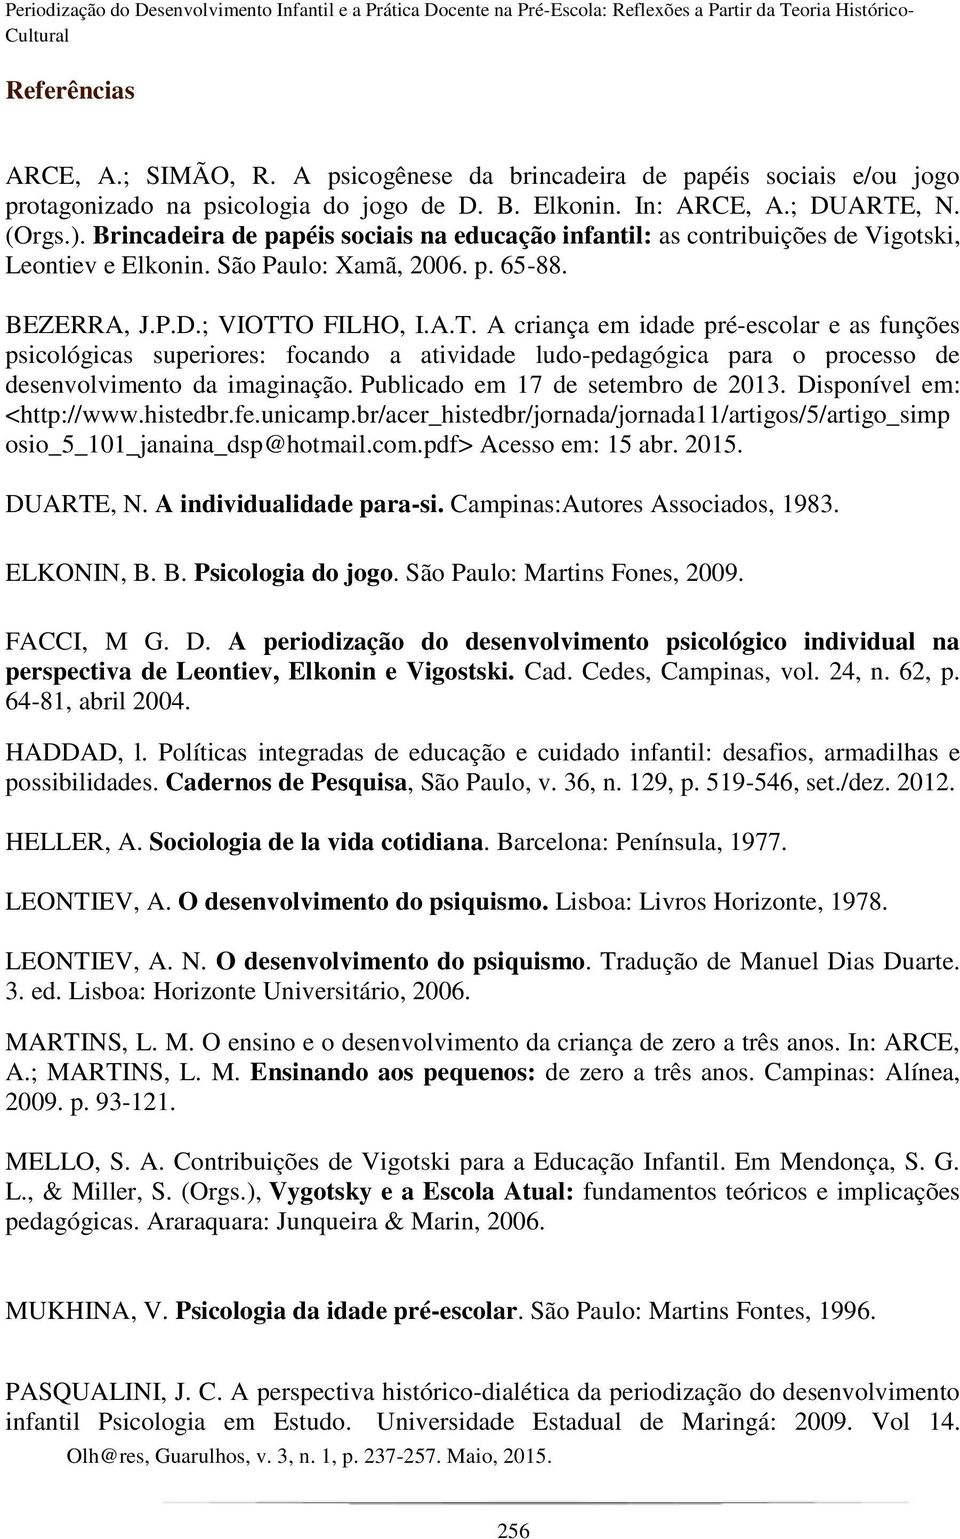 Brincadeira de papéis sociais na educação infantil: as contribuições de Vigotski, Leontiev e Elkonin. São Paulo: Xamã, 2006. p. 65-88. BEZERRA, J.P.D.; VIOTT